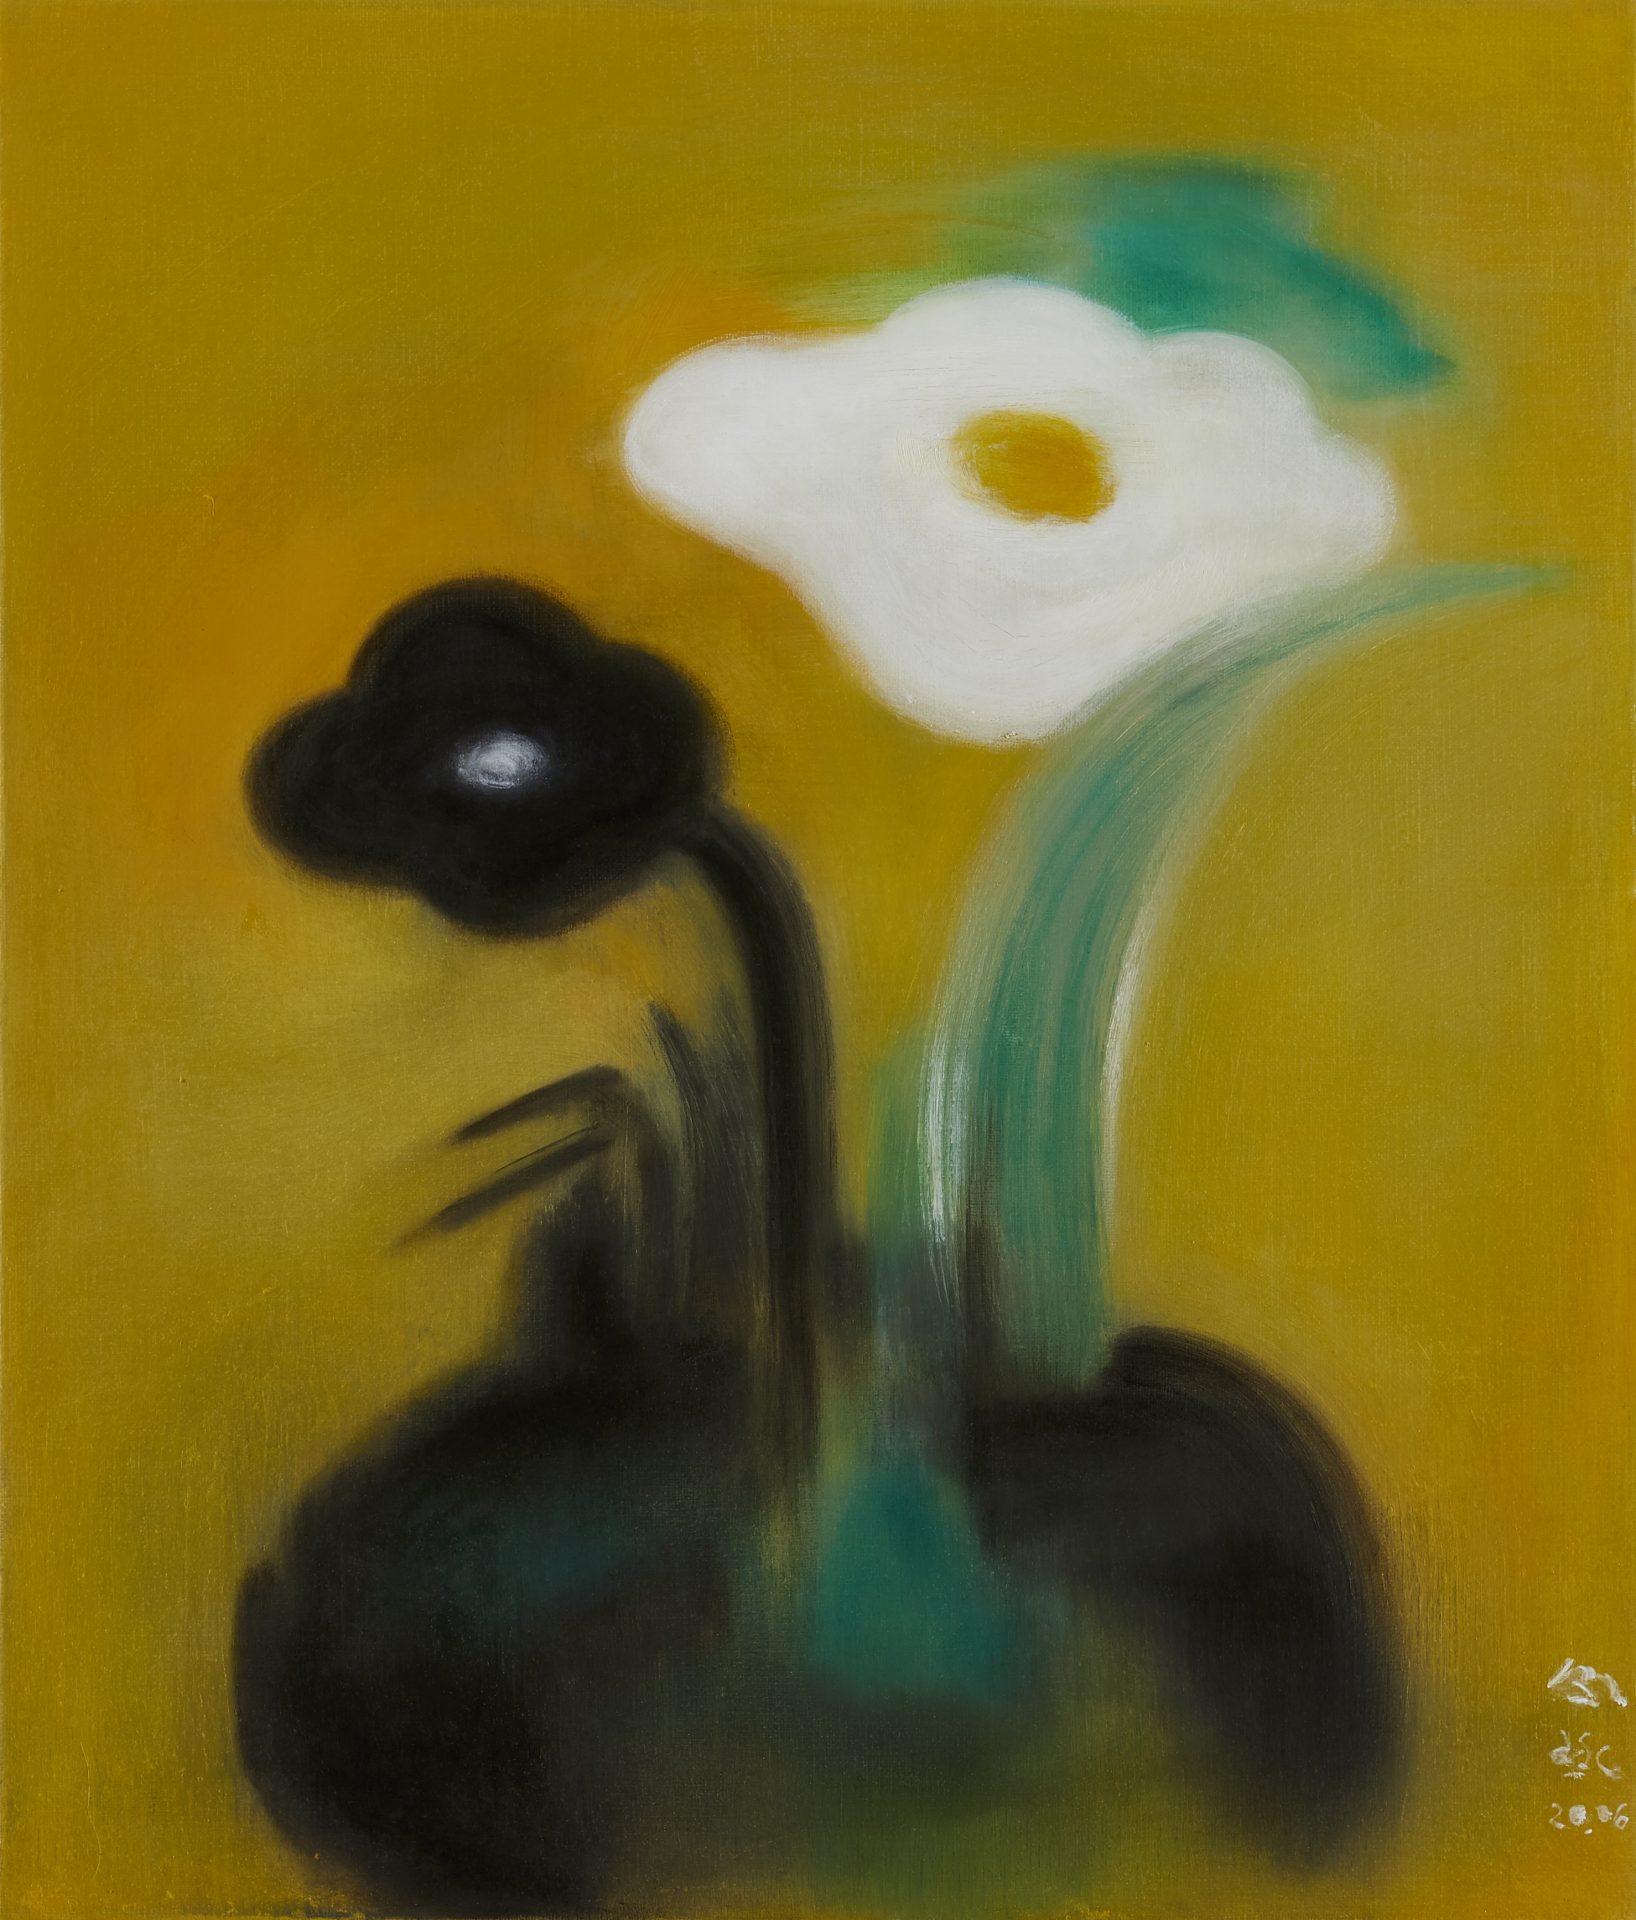 令詠 Ling Yung, 花 Flower, 2020, 畫布油彩 oil on canvas, 53 x 45.5 cm